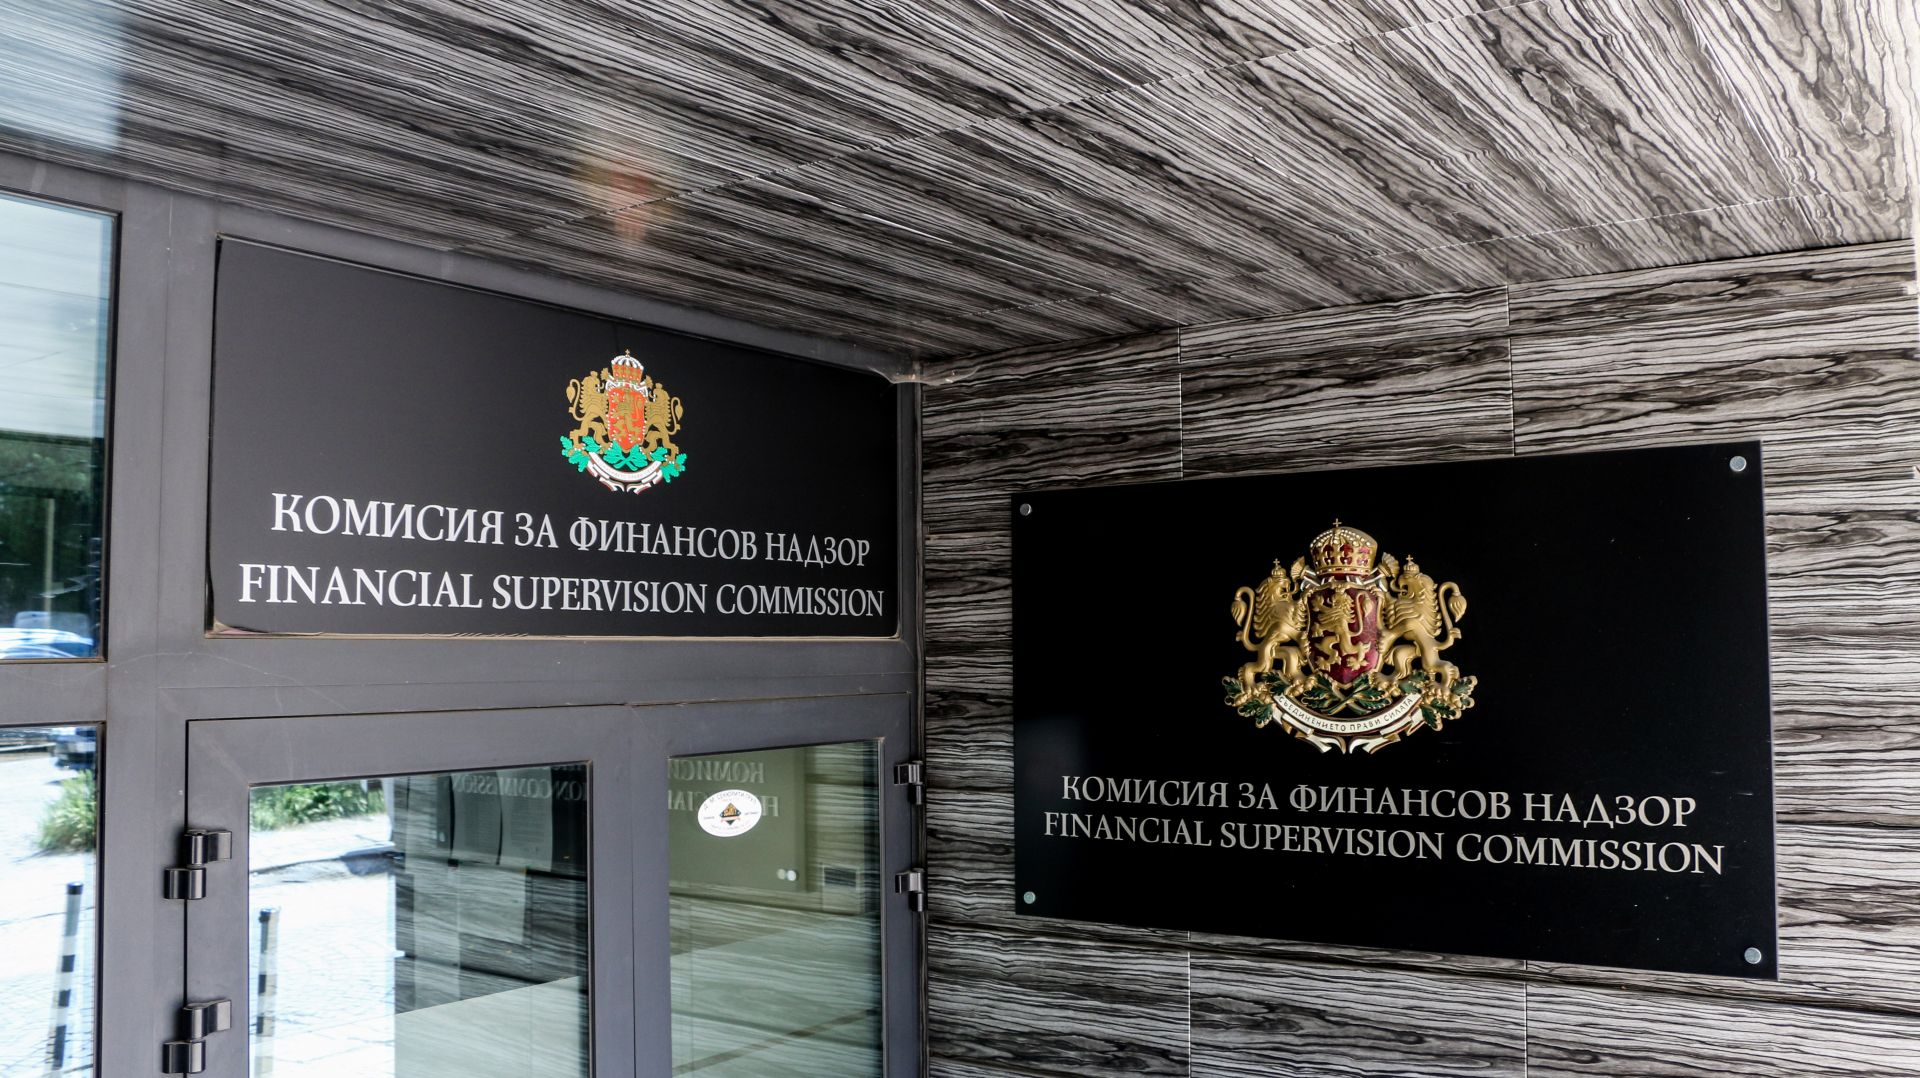 Комисията за финансов надзор ще може да извършва стрес-тестове за установяване на финансовото състояние на пенсионните фондове